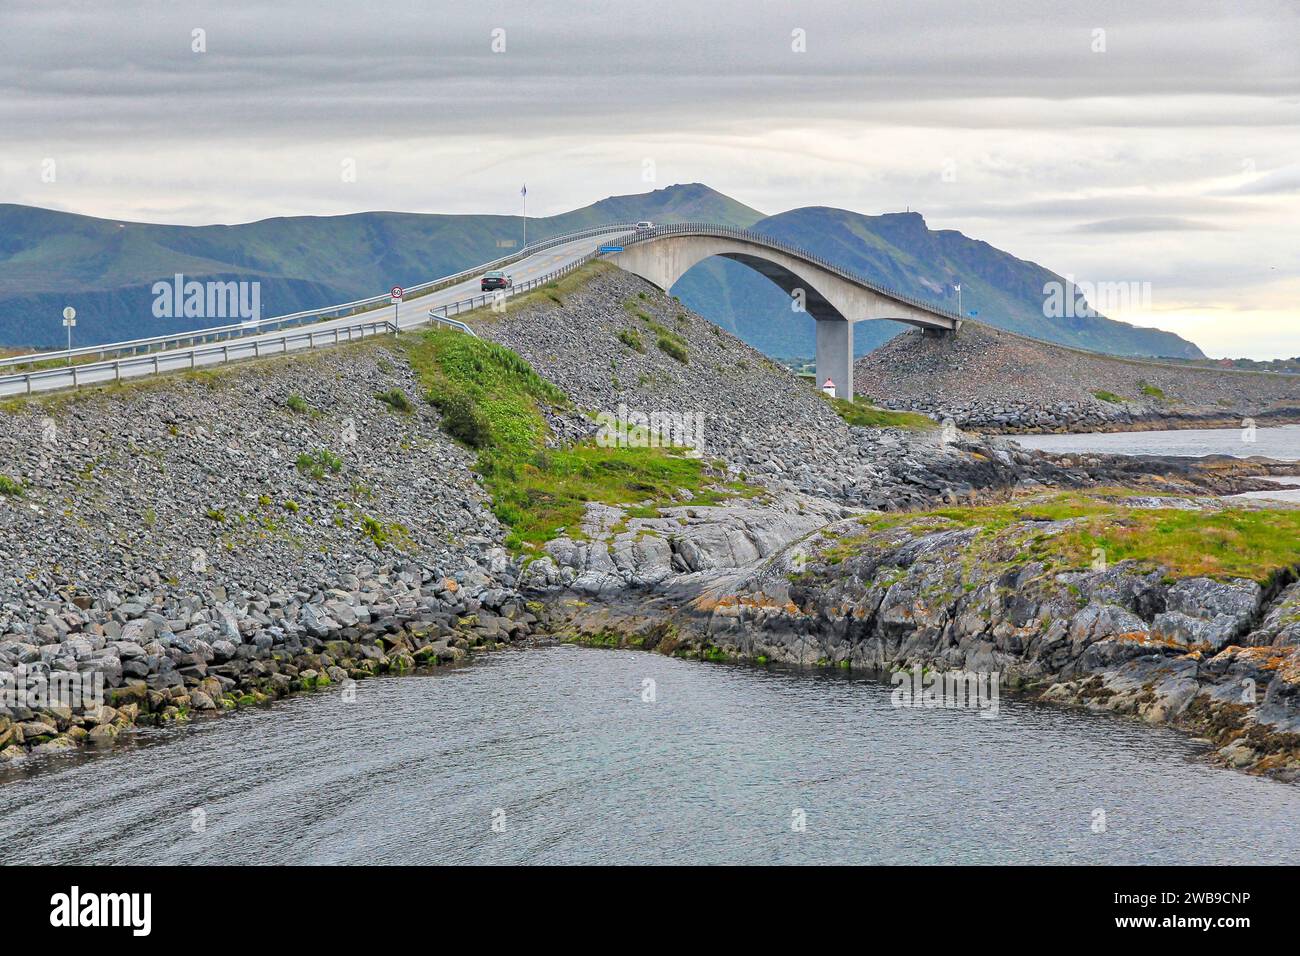 Route de l'Atlantique de la Norvège. Route touristique national. Storseisundet Storseisundbrua (Pont). Banque D'Images